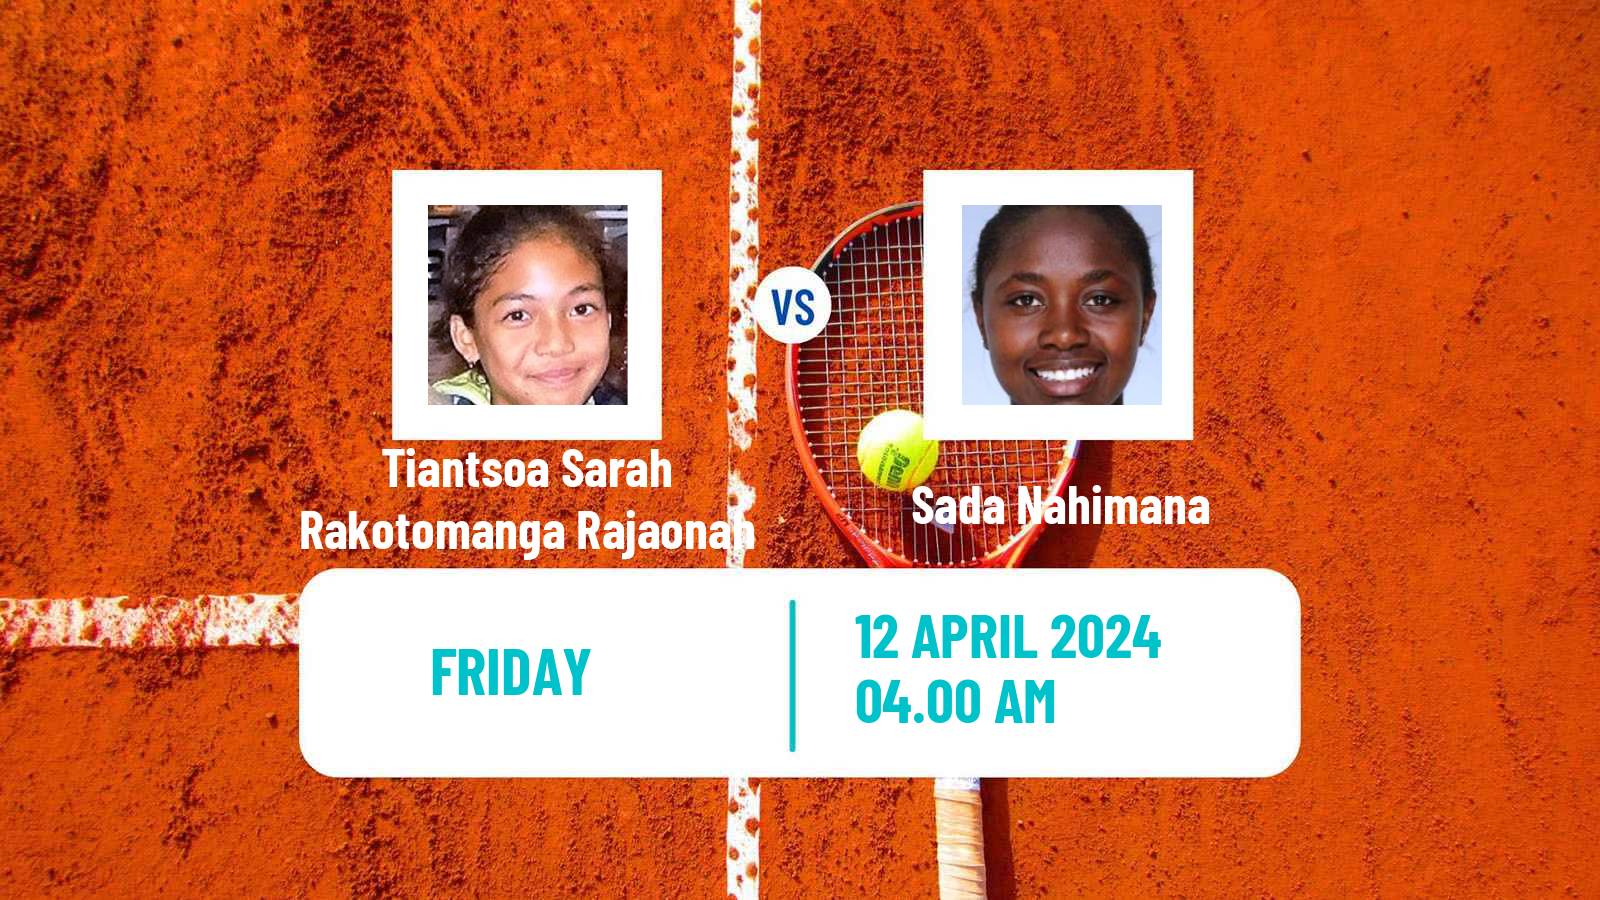 Tennis ITF W35 Bujumbura 2 Women Tiantsoa Sarah Rakotomanga Rajaonah - Sada Nahimana